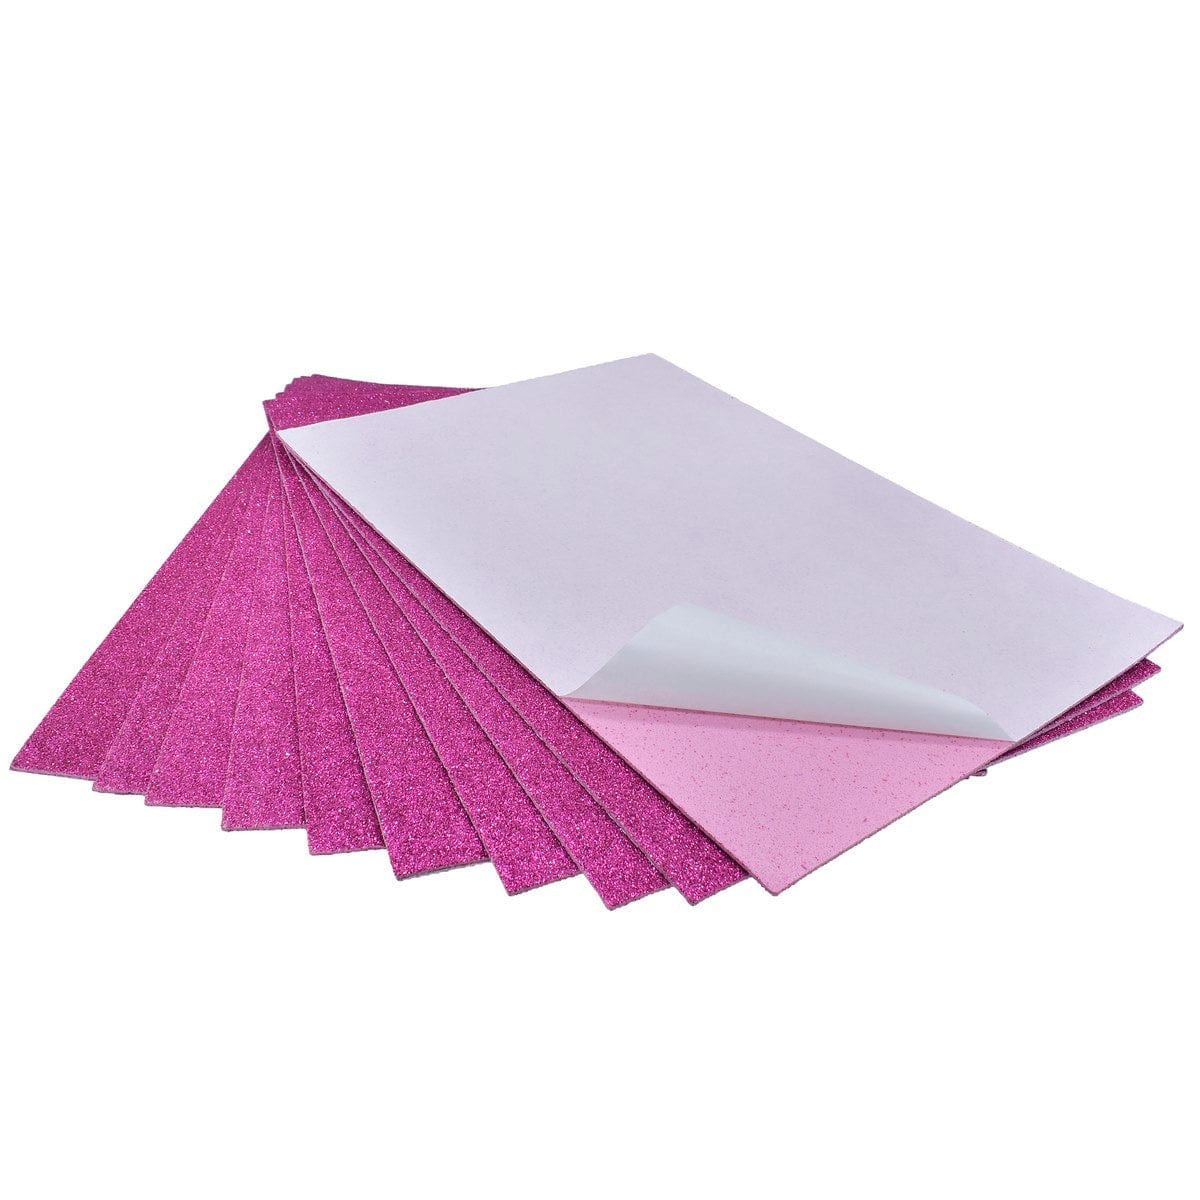 jags-mumbai Glitter Paper & Foam Sheet A4 Glitter Foam Sheet With Sticker R Pink 26164RPK